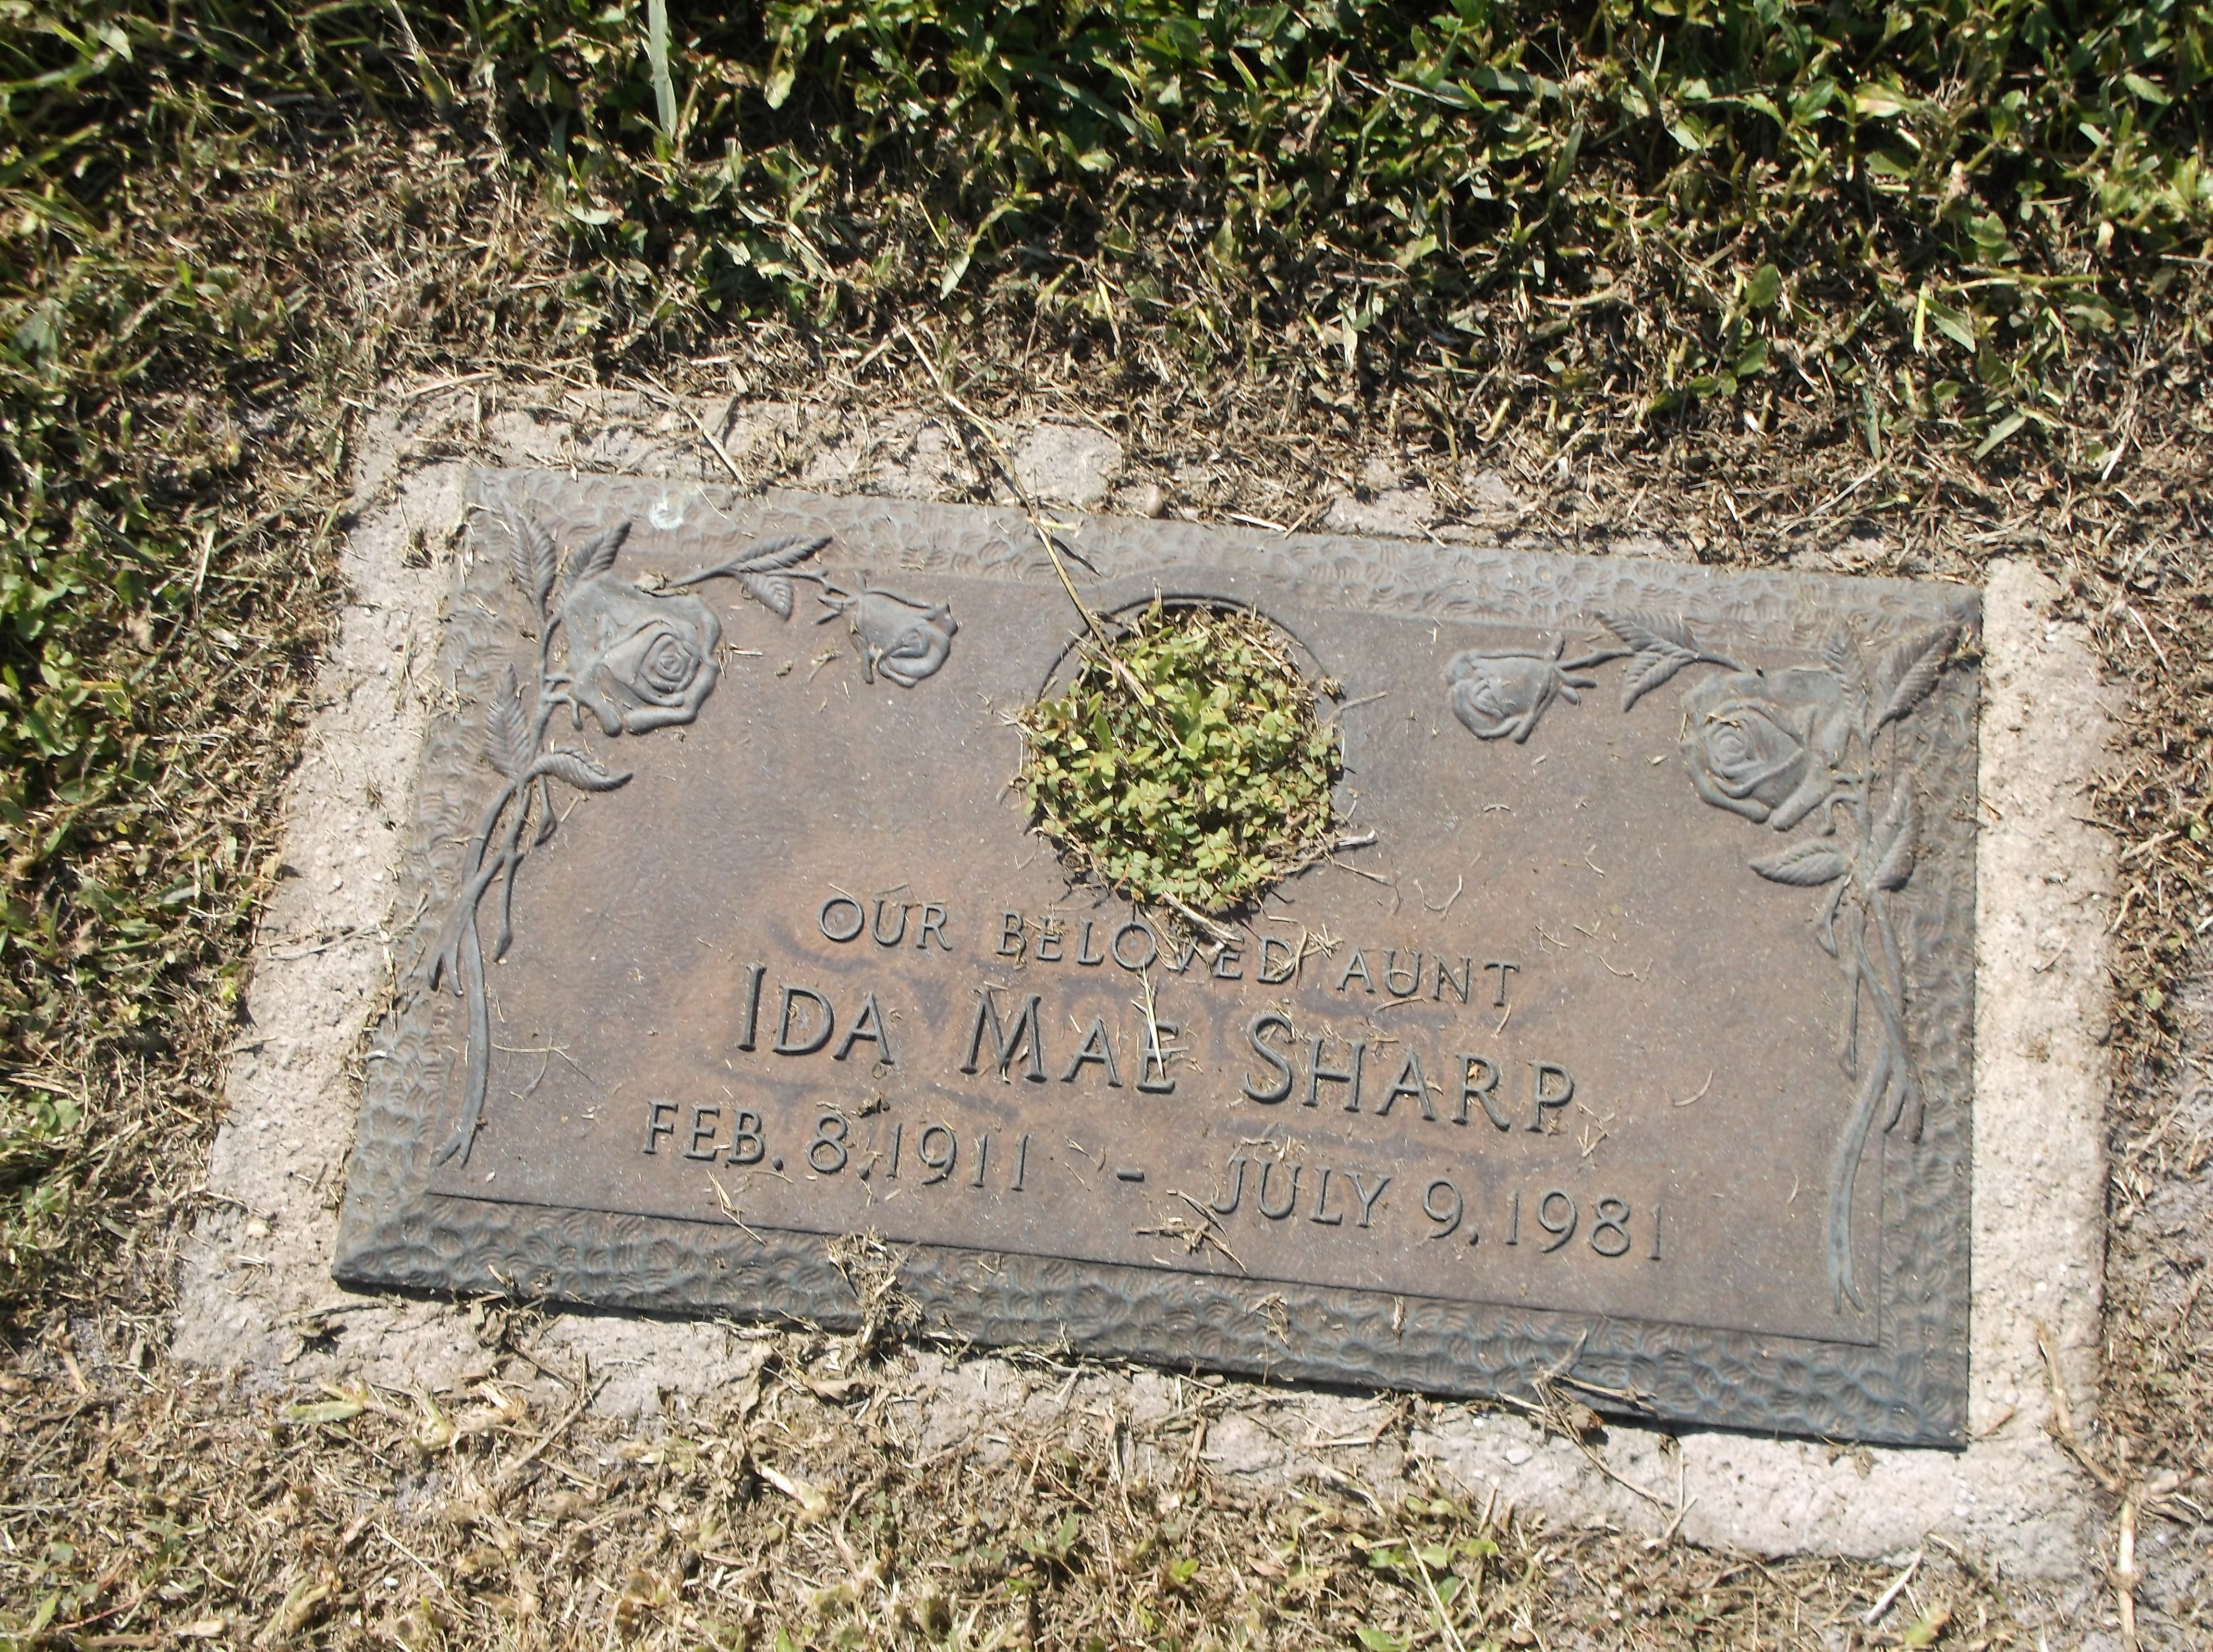 Ida Mae Sharp